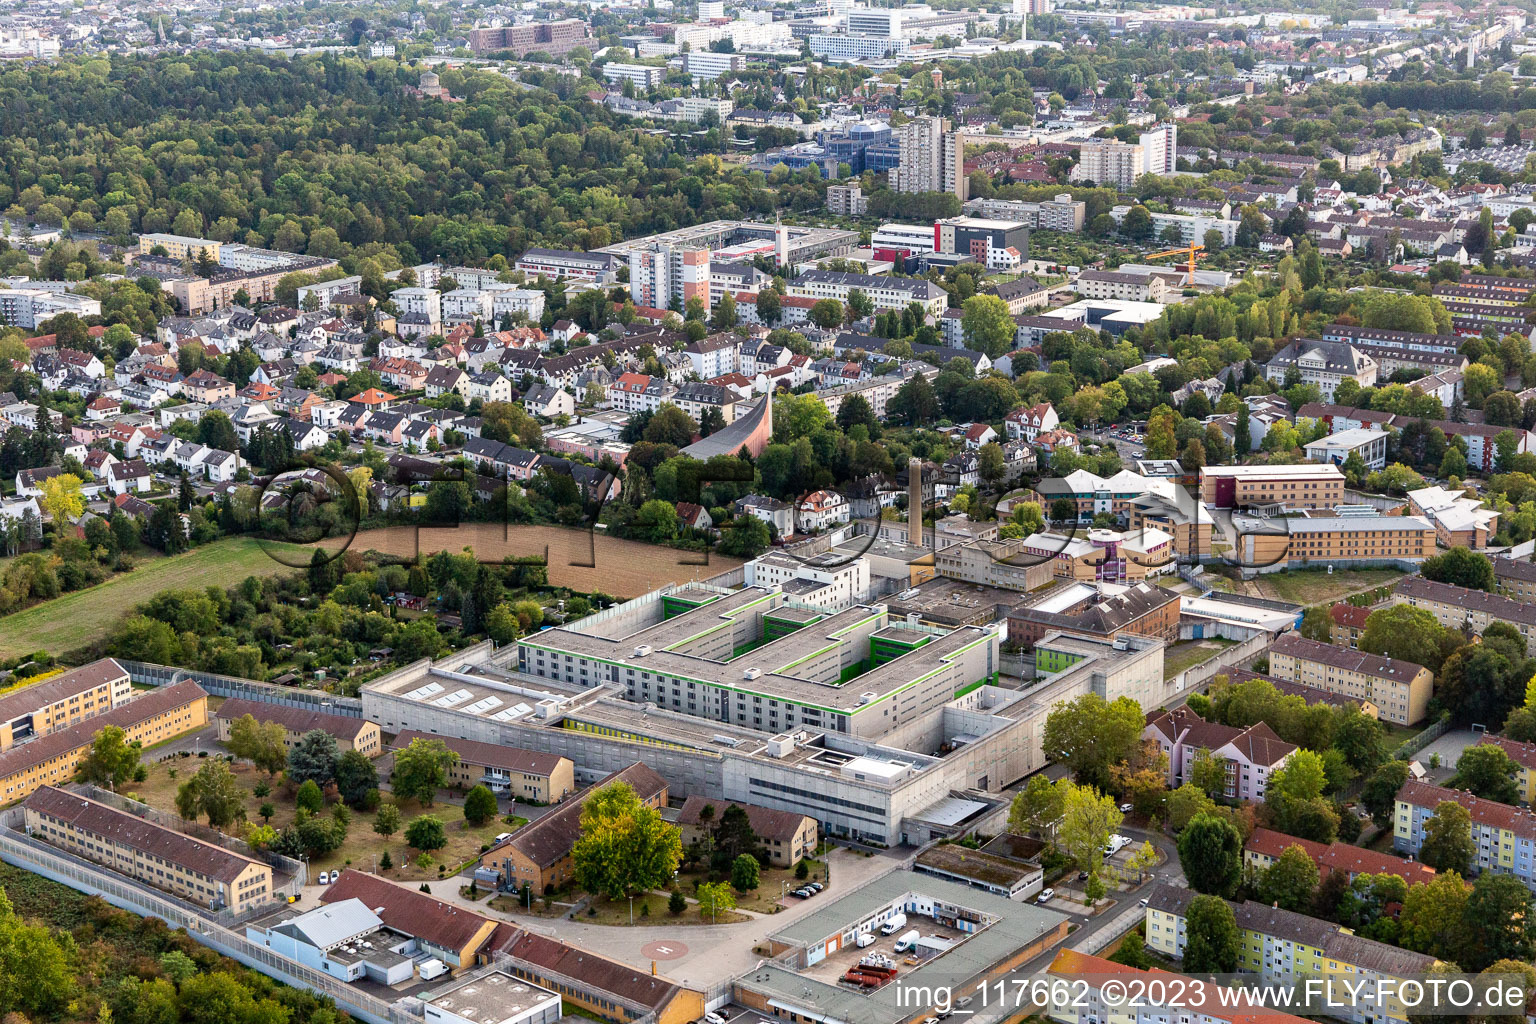 Luftbild von Justizvollzugsanstalt Frankfurt II im Ortsteil Preungesheim in Frankfurt am Main im Bundesland Hessen, Deutschland